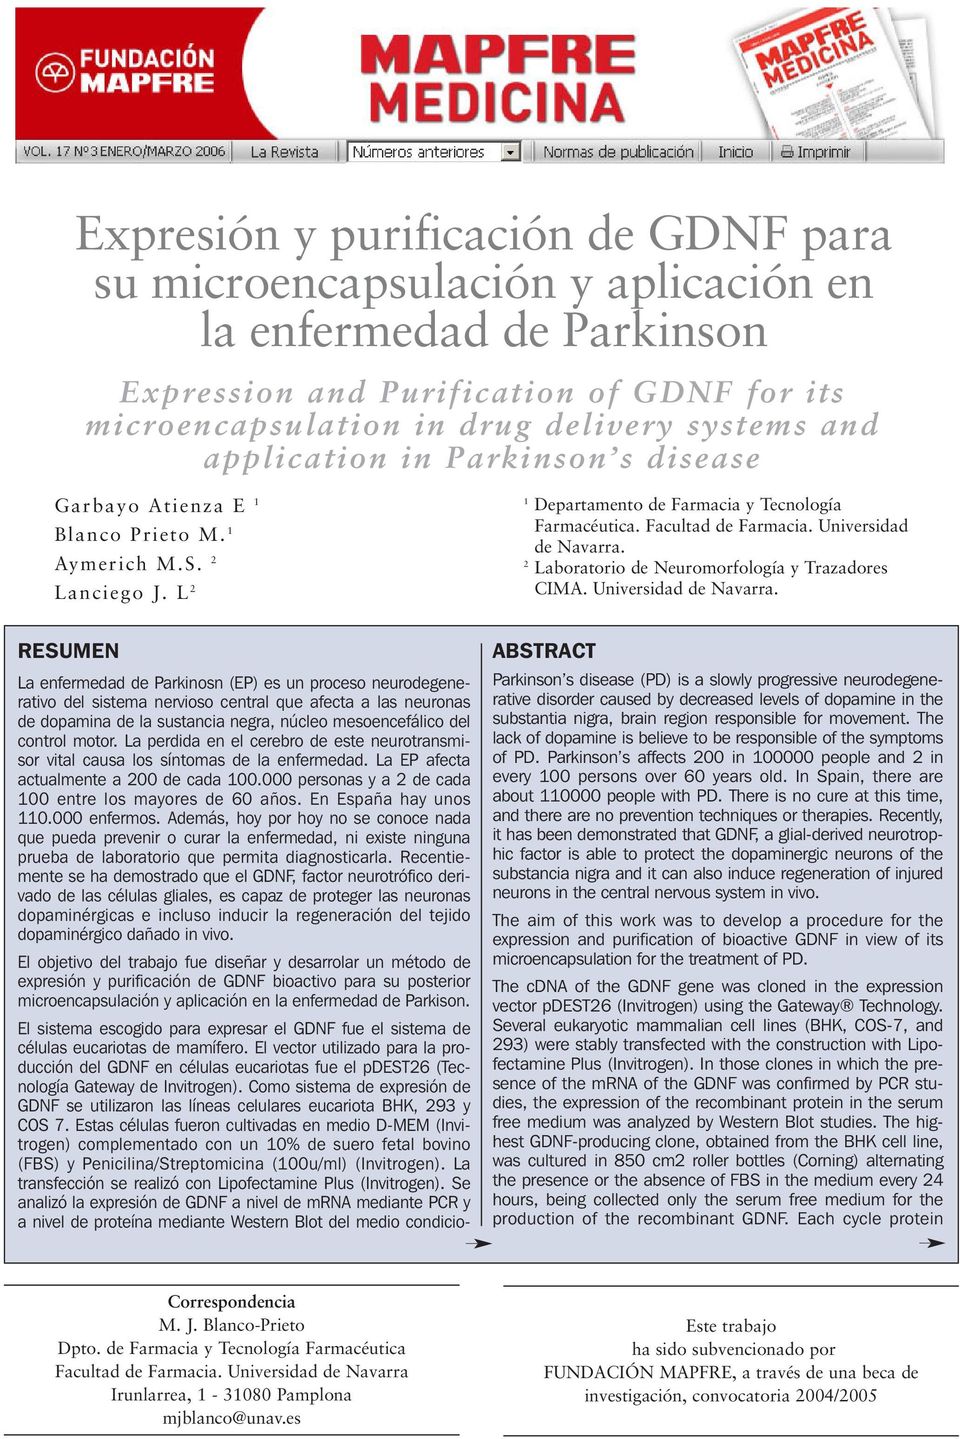 2 Laboratorio de Neuromorfología y Trazadores CIM. Universidad de Navarra.